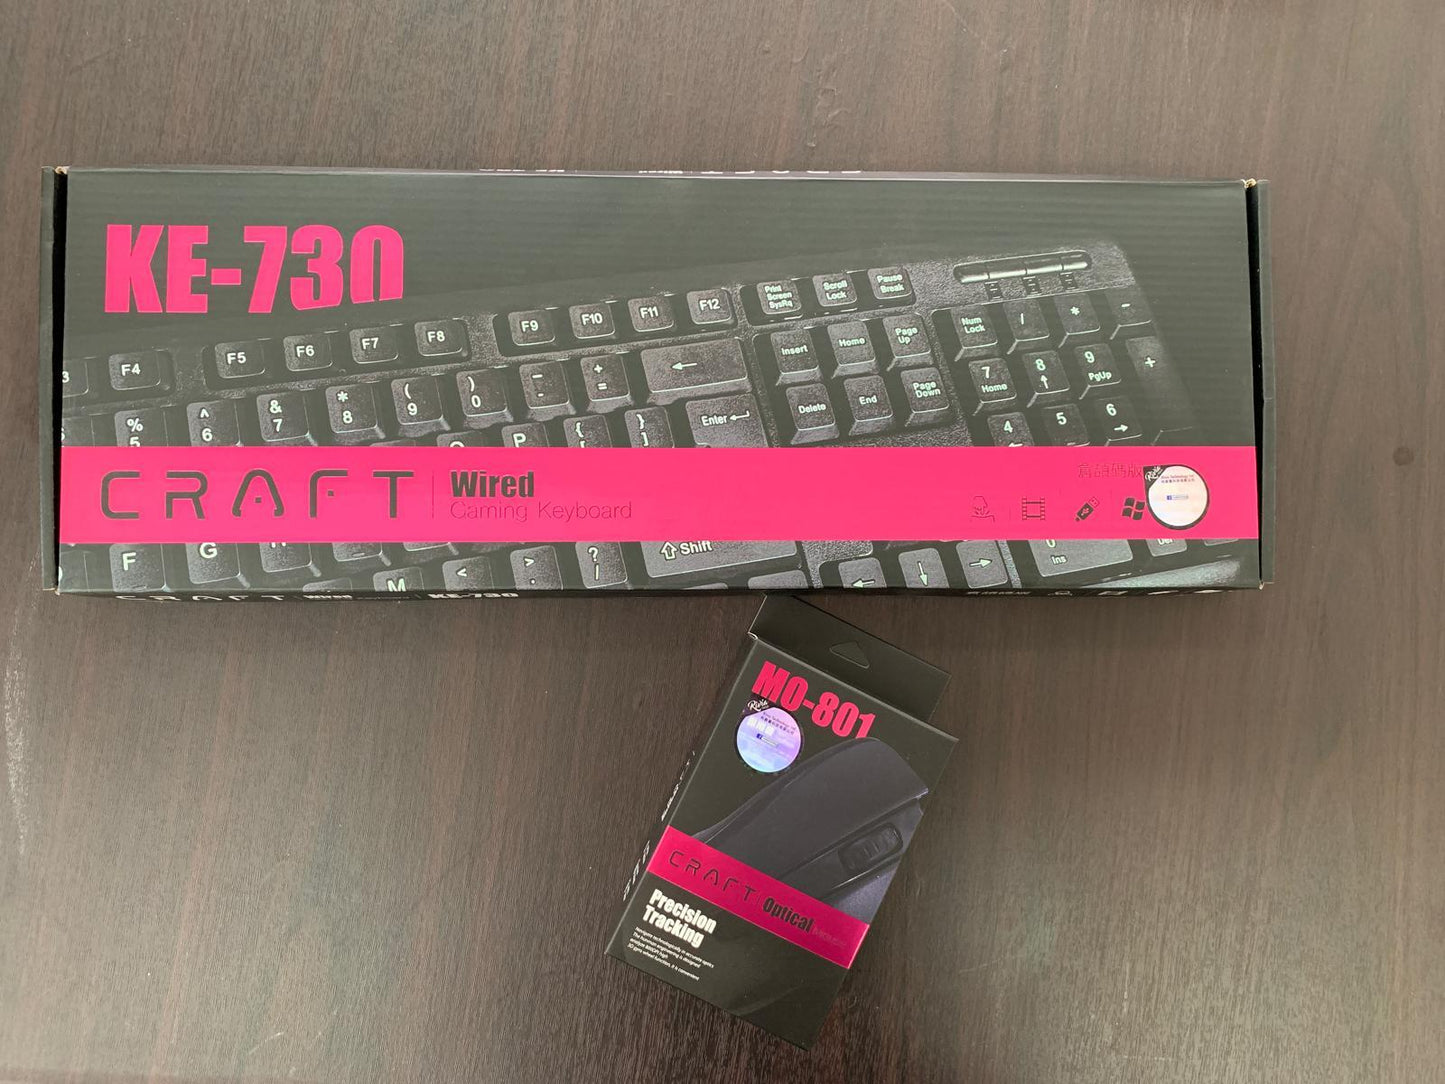 Craft KE-730 Wired Gaming Keyboard